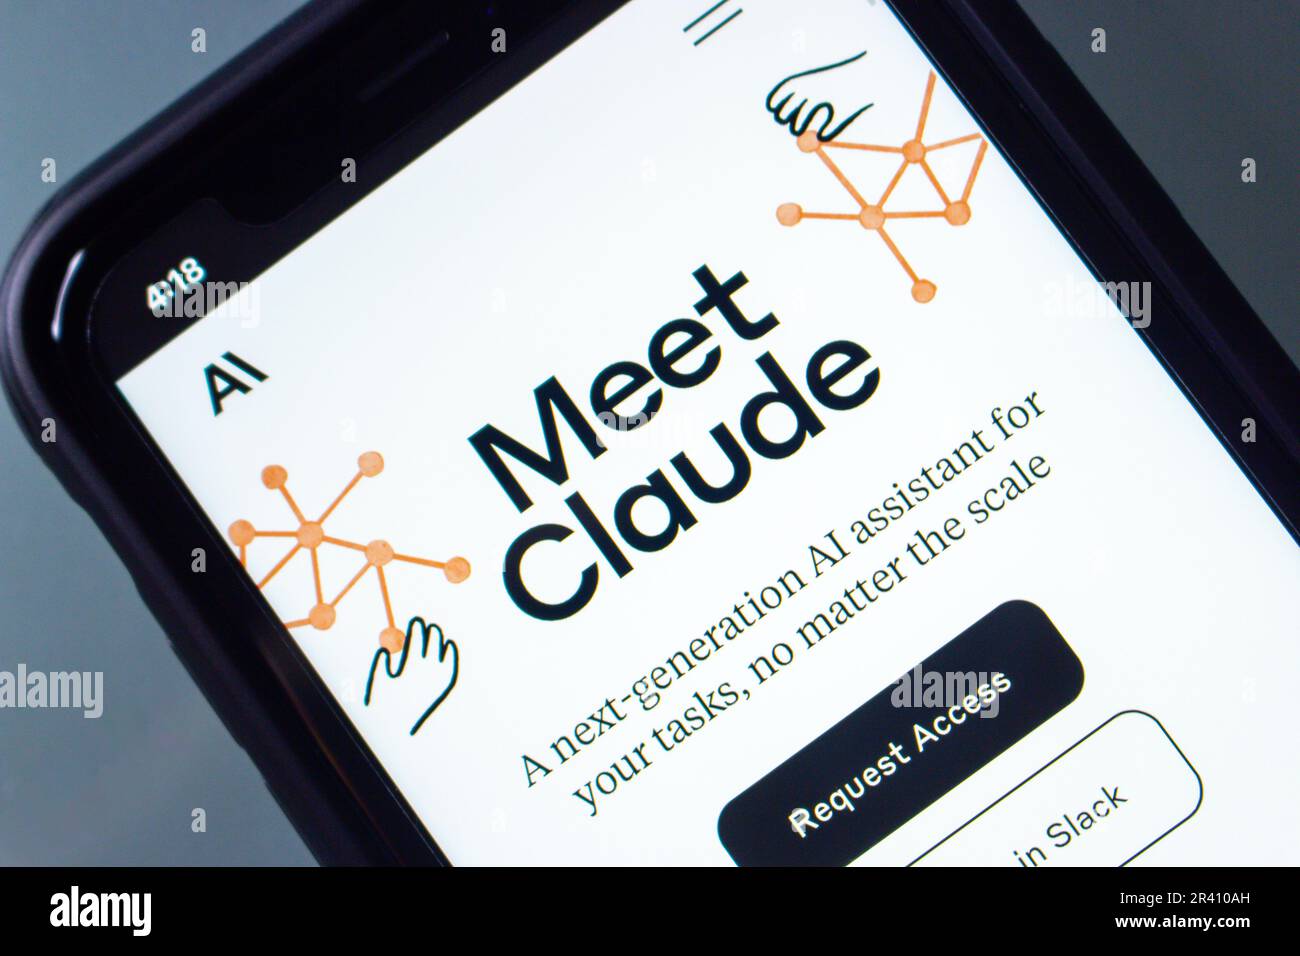 Sito web di Claude visto in uno schermo di iPhone. Claude ai è un chatbot assistente ai di nuova generazione, simile a ChatGPT, prodotto da un'antropica startup basata sull'intelligenza artificiale. Foto Stock